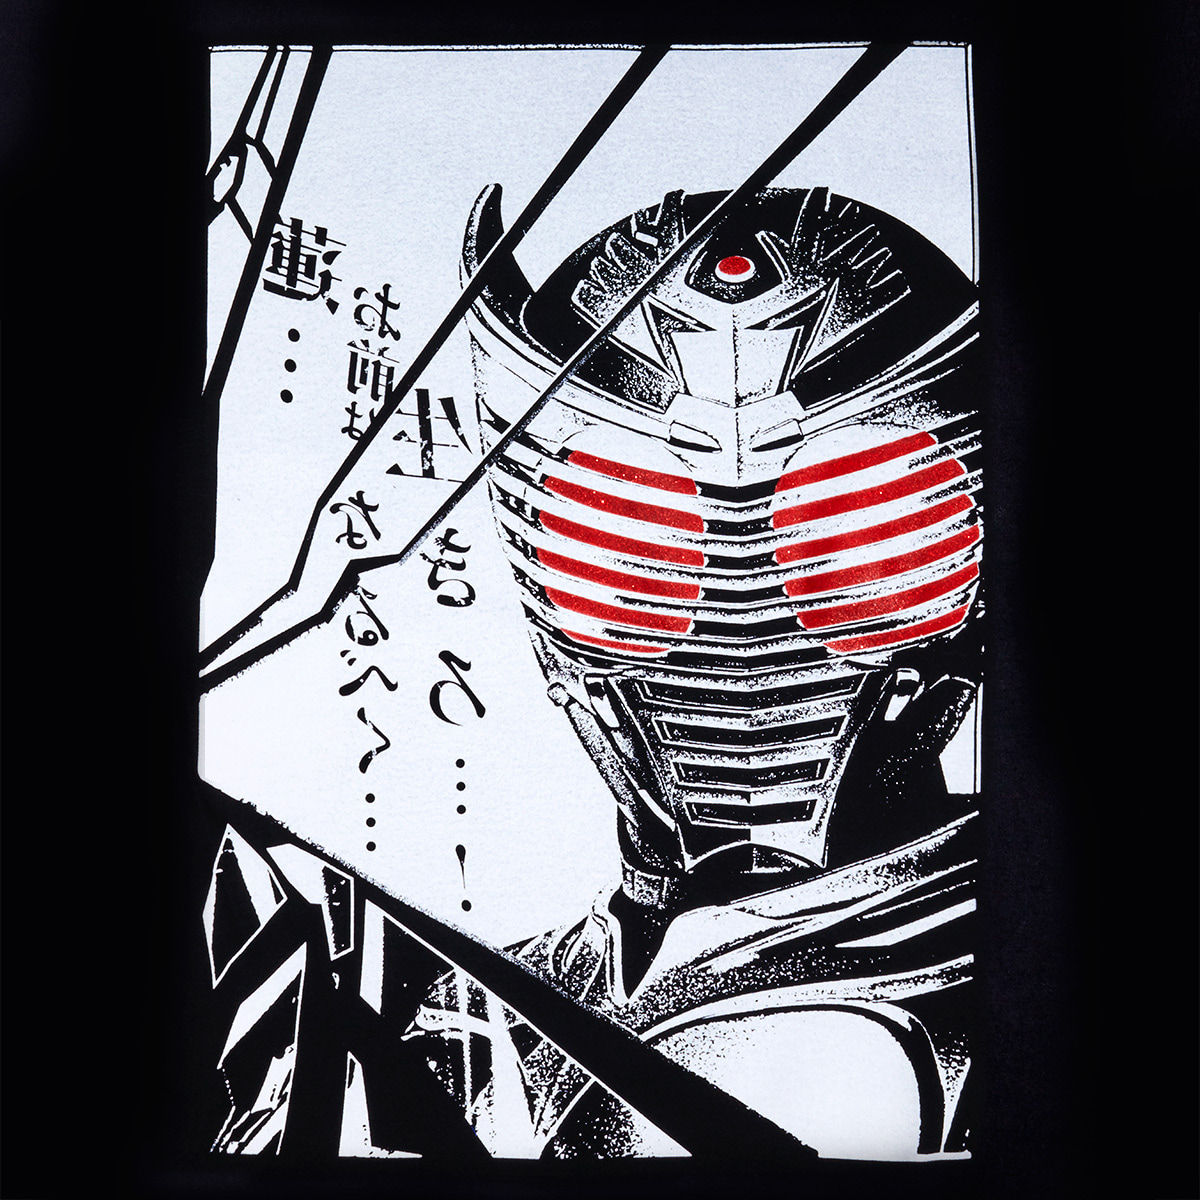 Kamen Rider Ryuki Climax Scene T-shirt